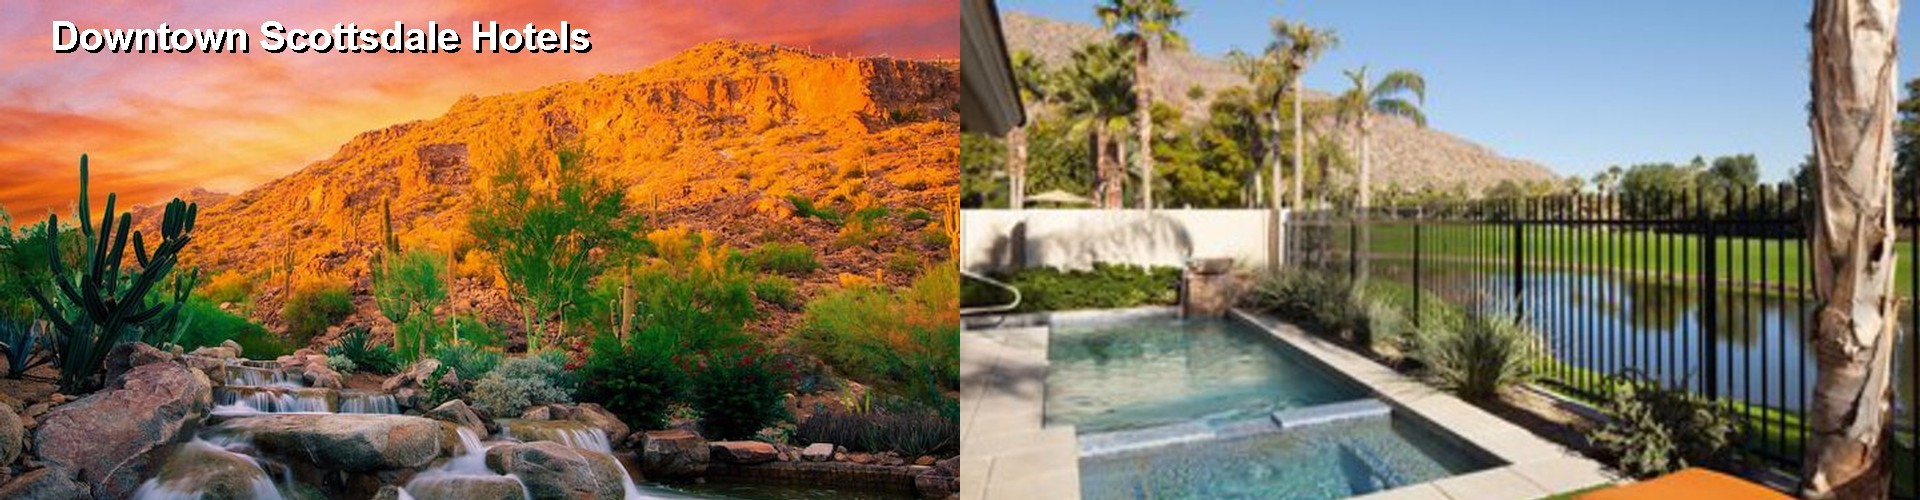 5 Best Hotels near Downtown Scottsdale